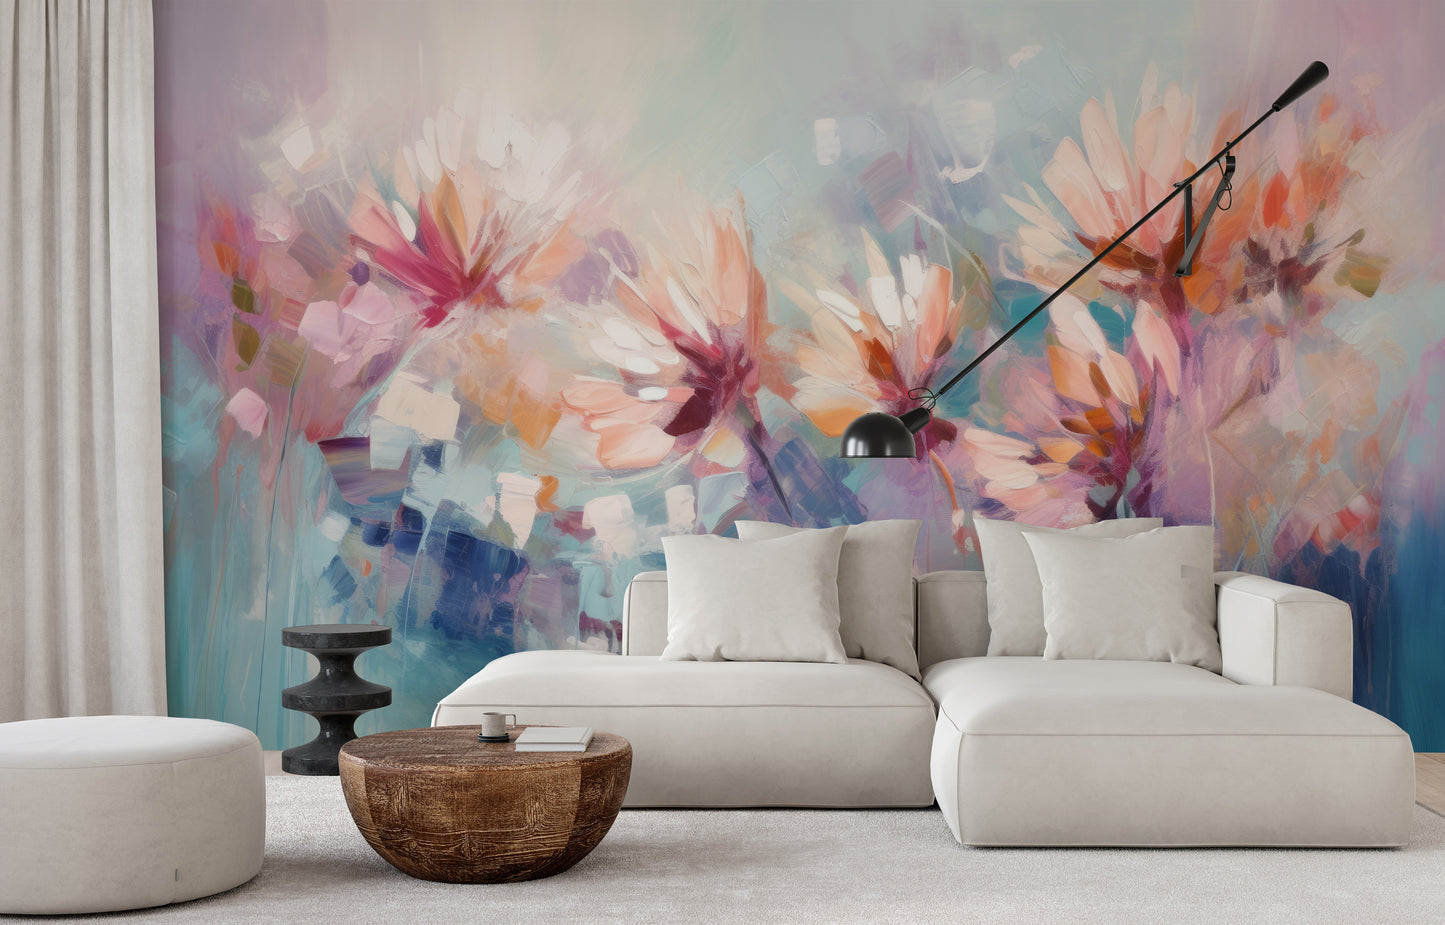 Wzór fototapety malowanej o nazwie Ethereal Blossom Dance pokazanej w aranżacji wnętrza.